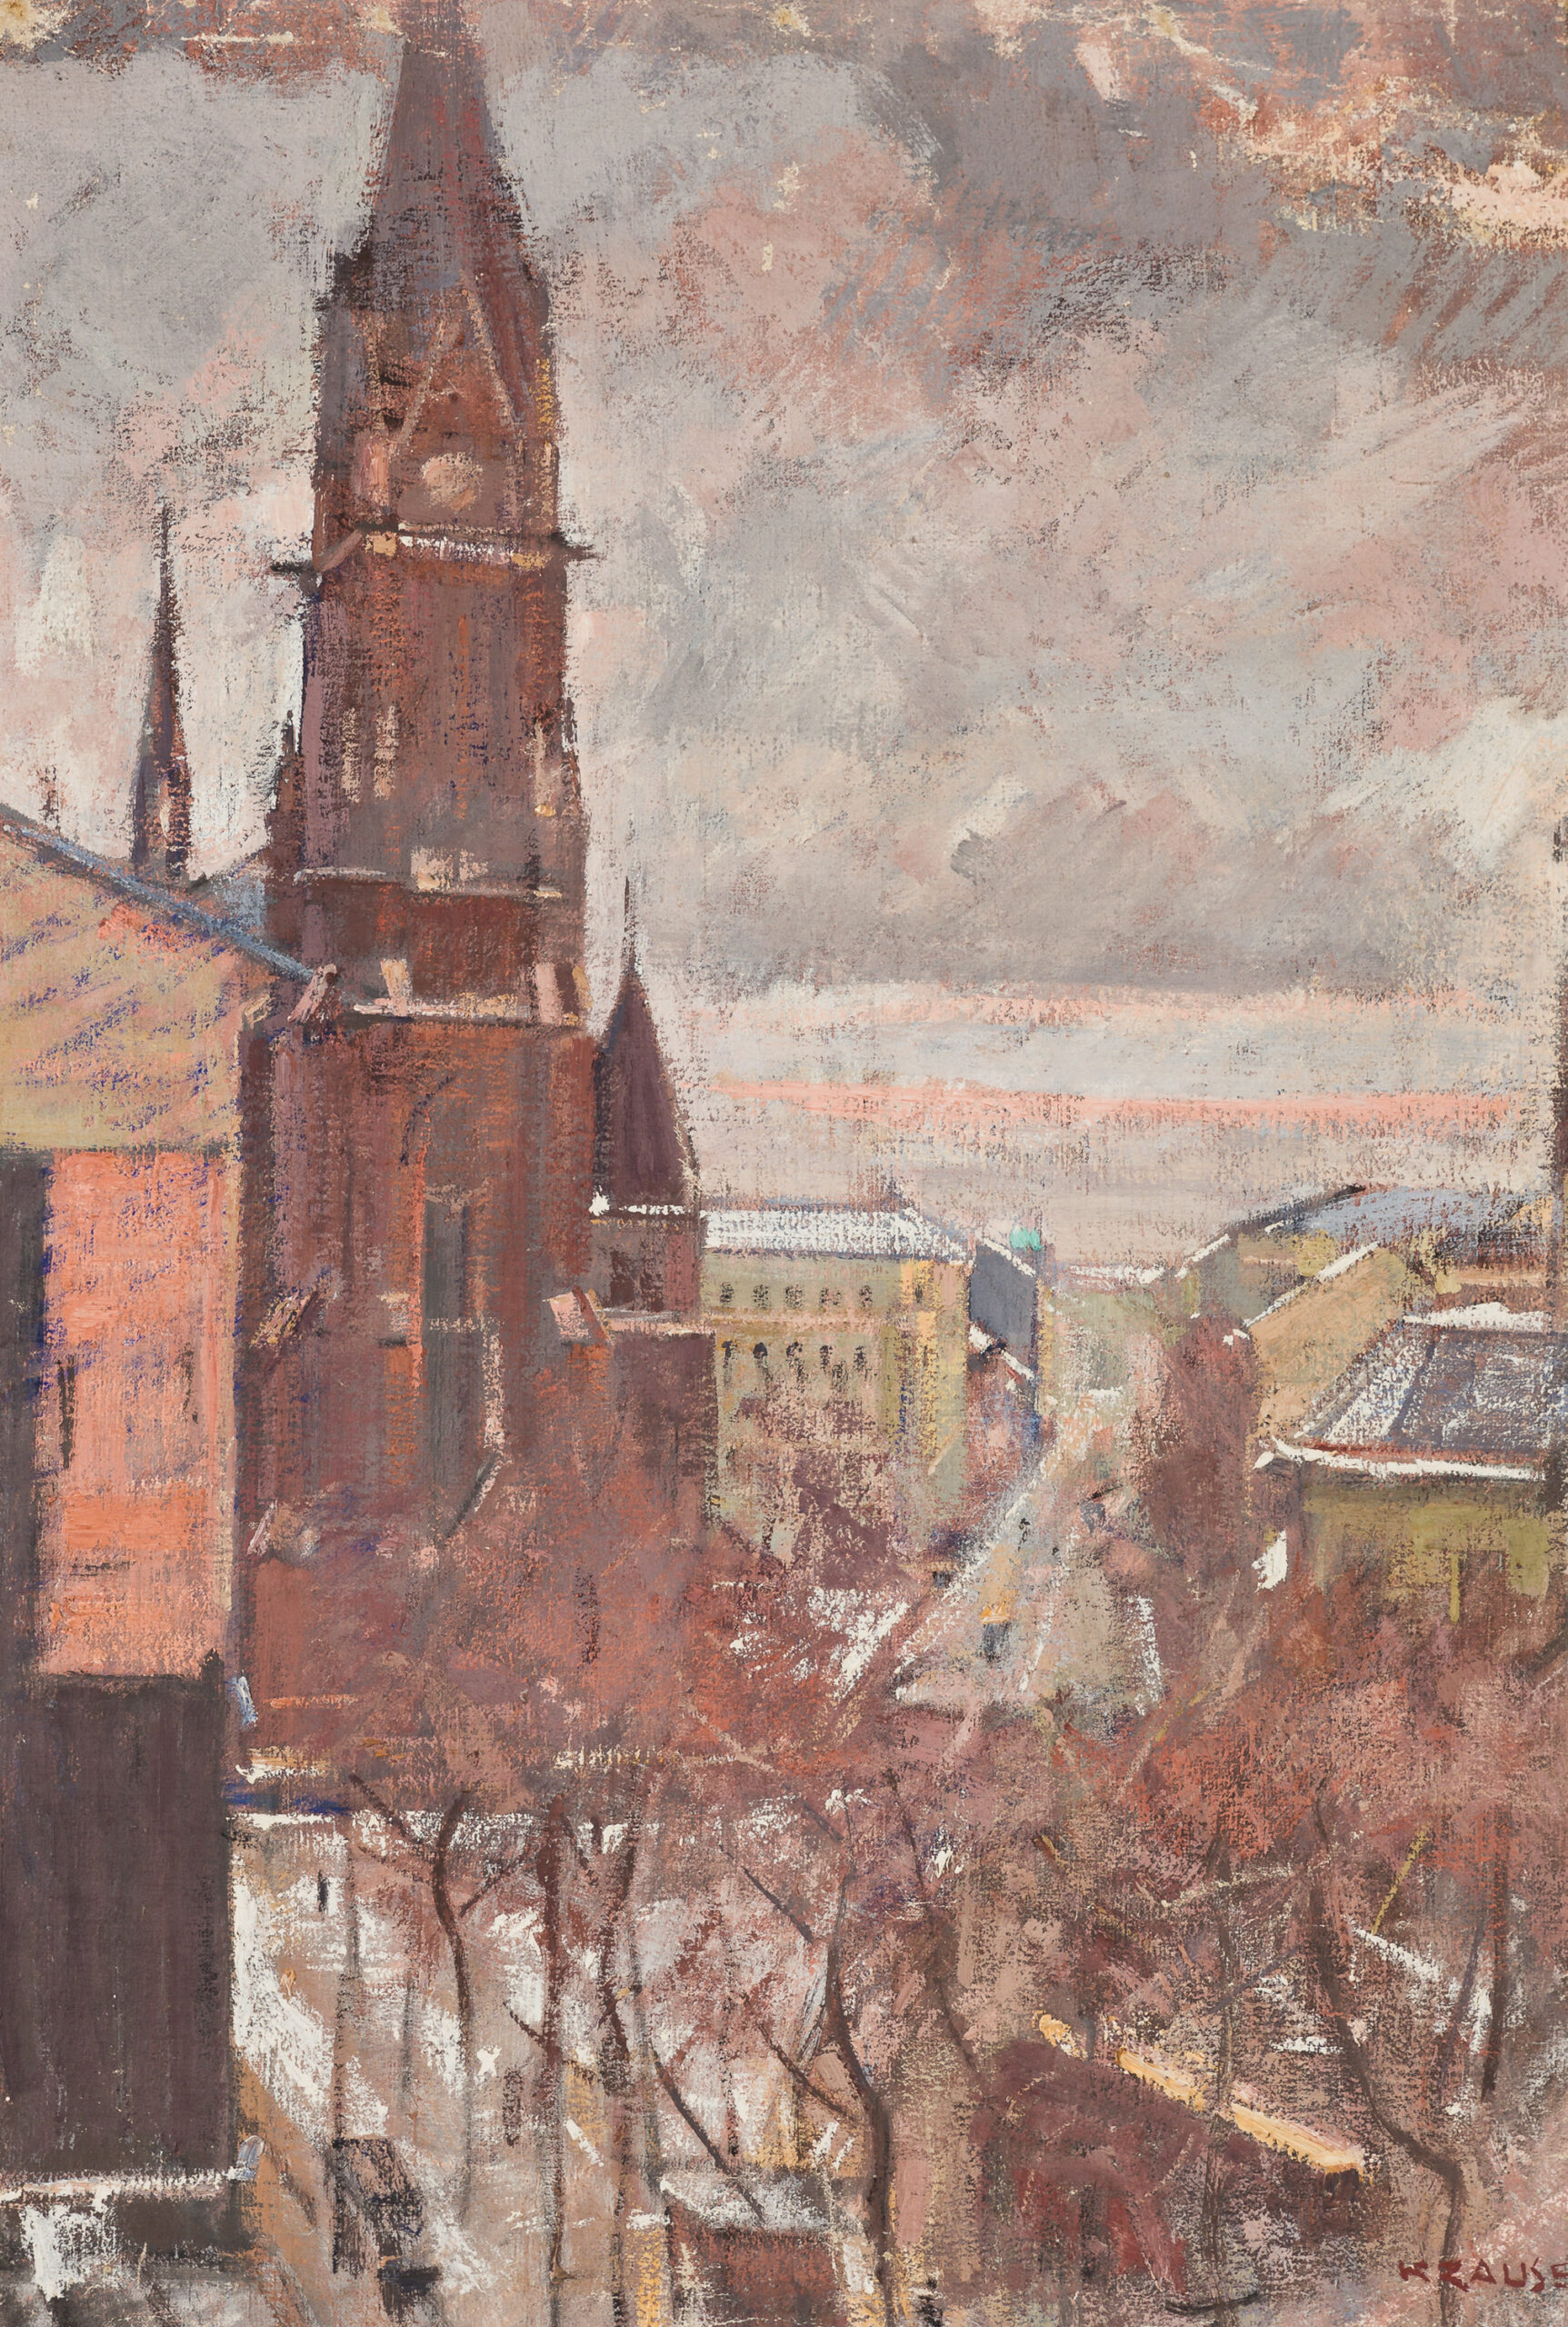 Krause Heinrich-Brigittakirche - view from the studio